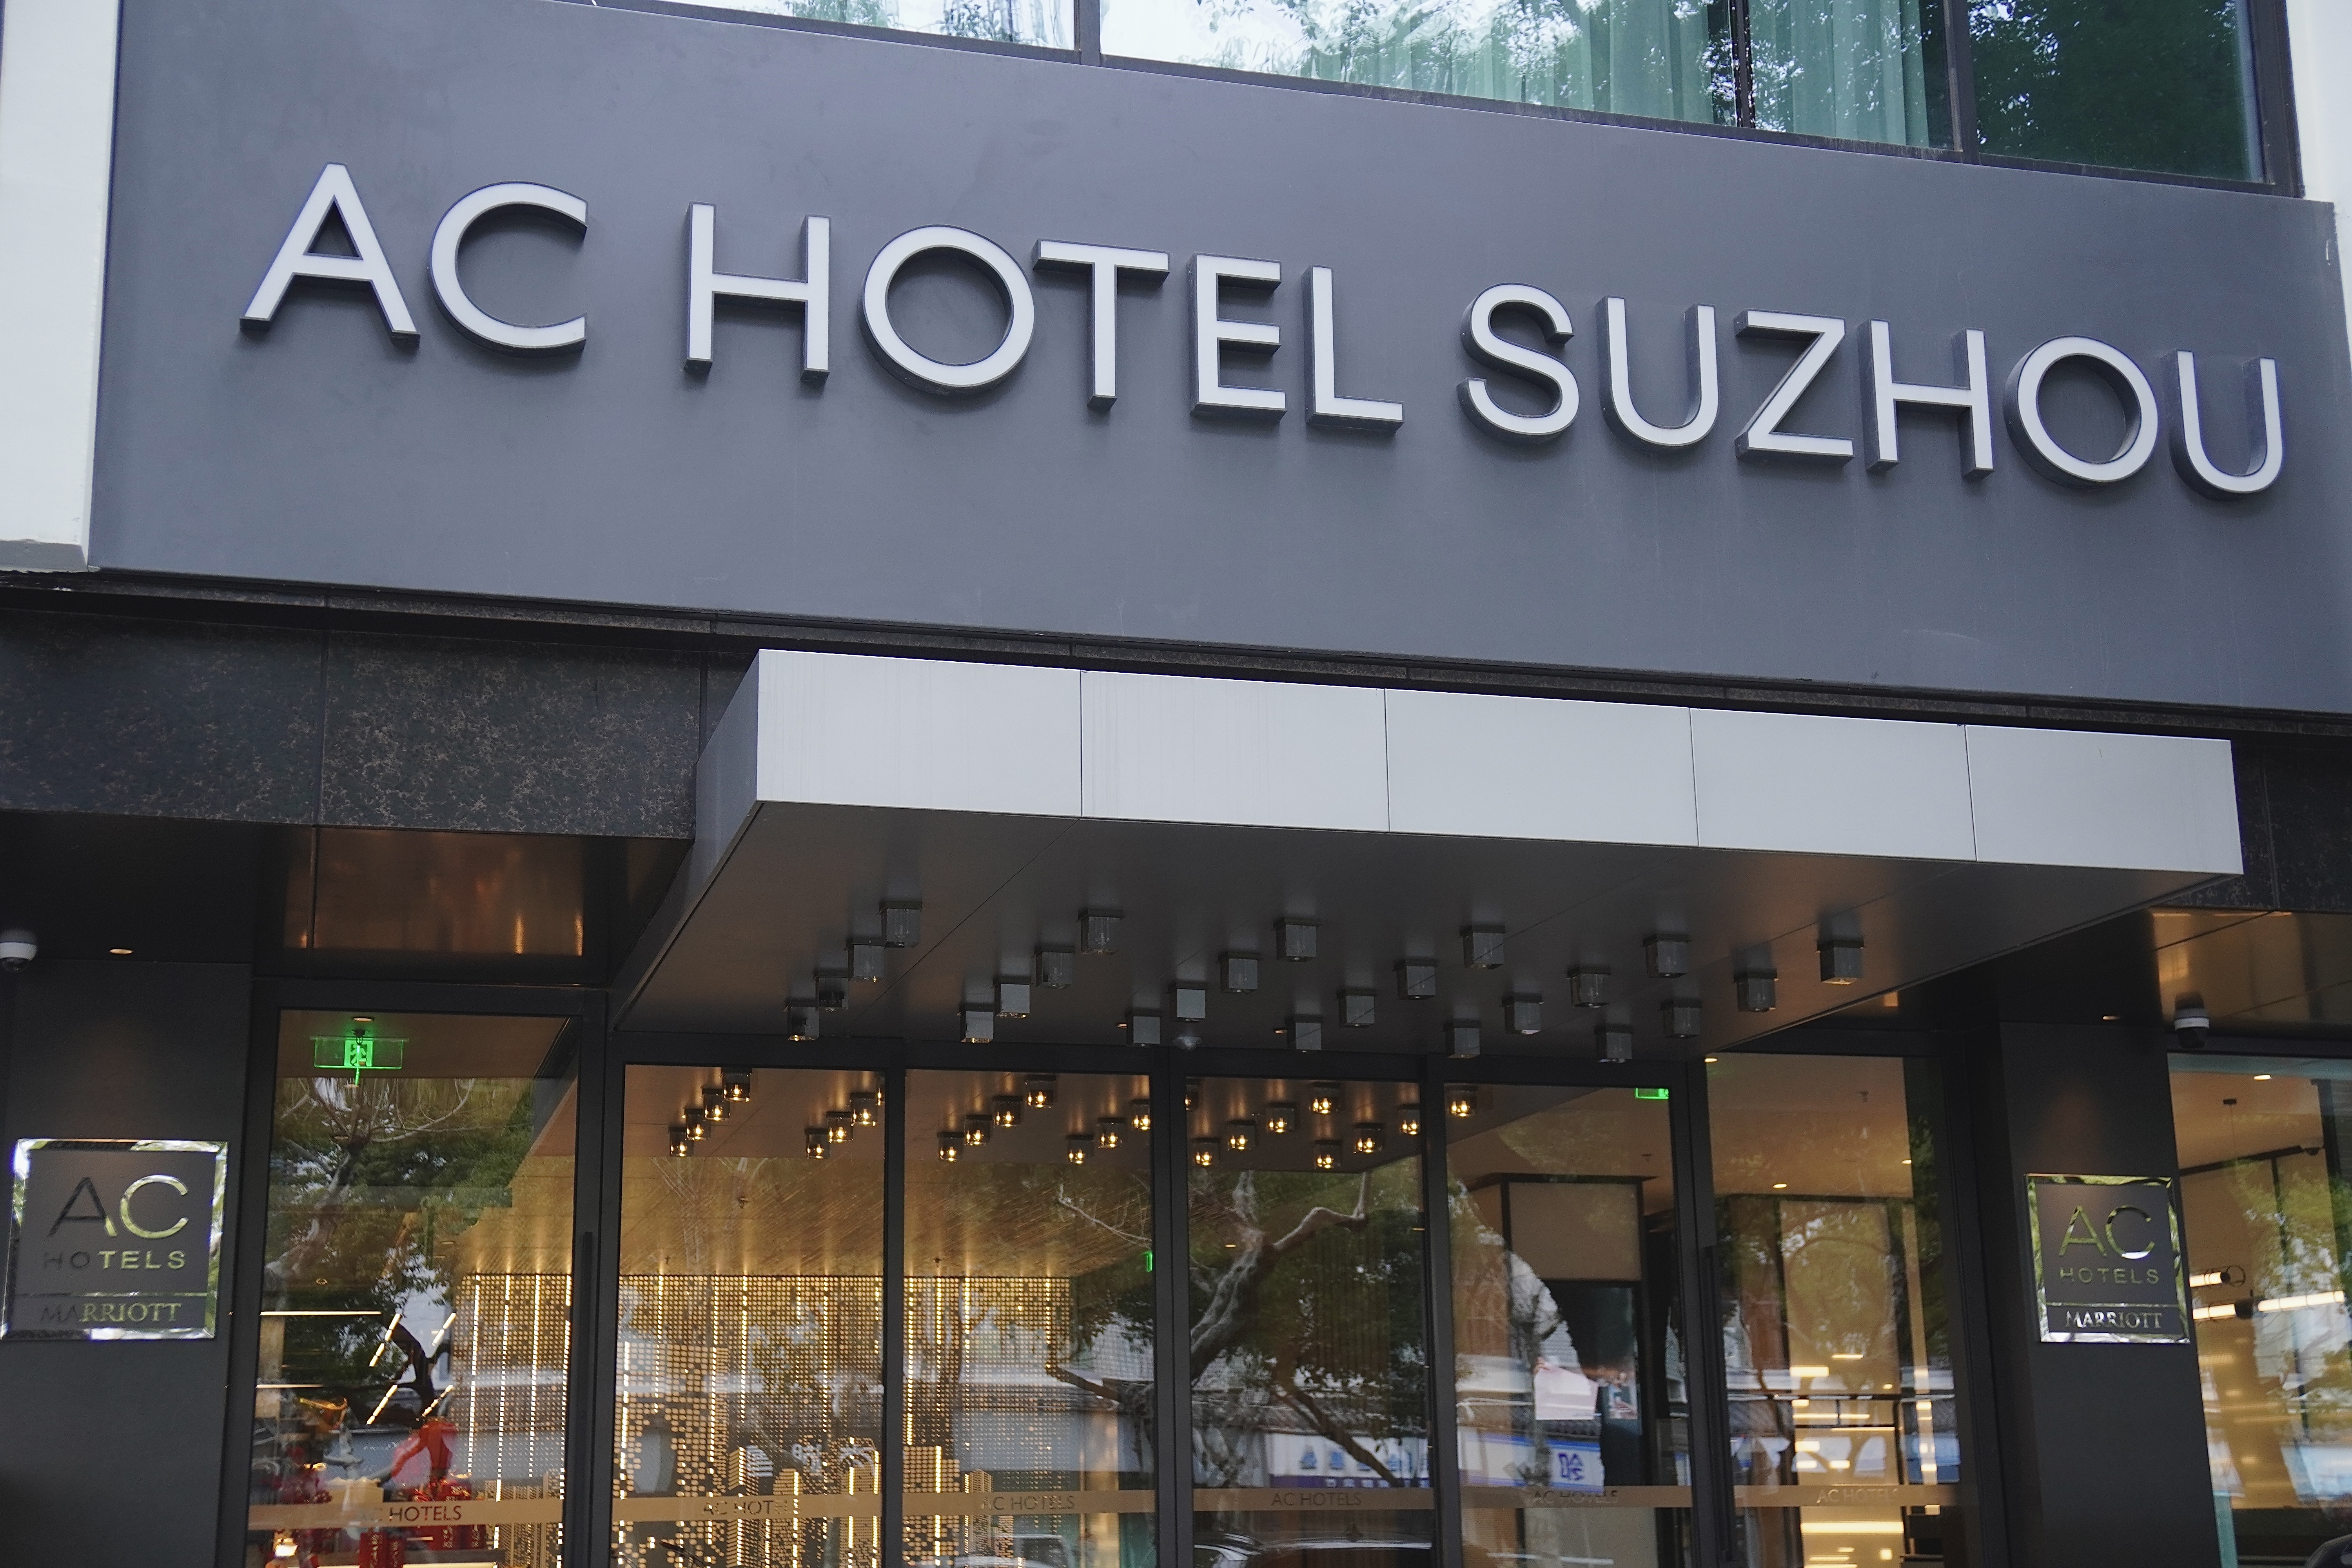 ιգAC AC Hotel Suzhou